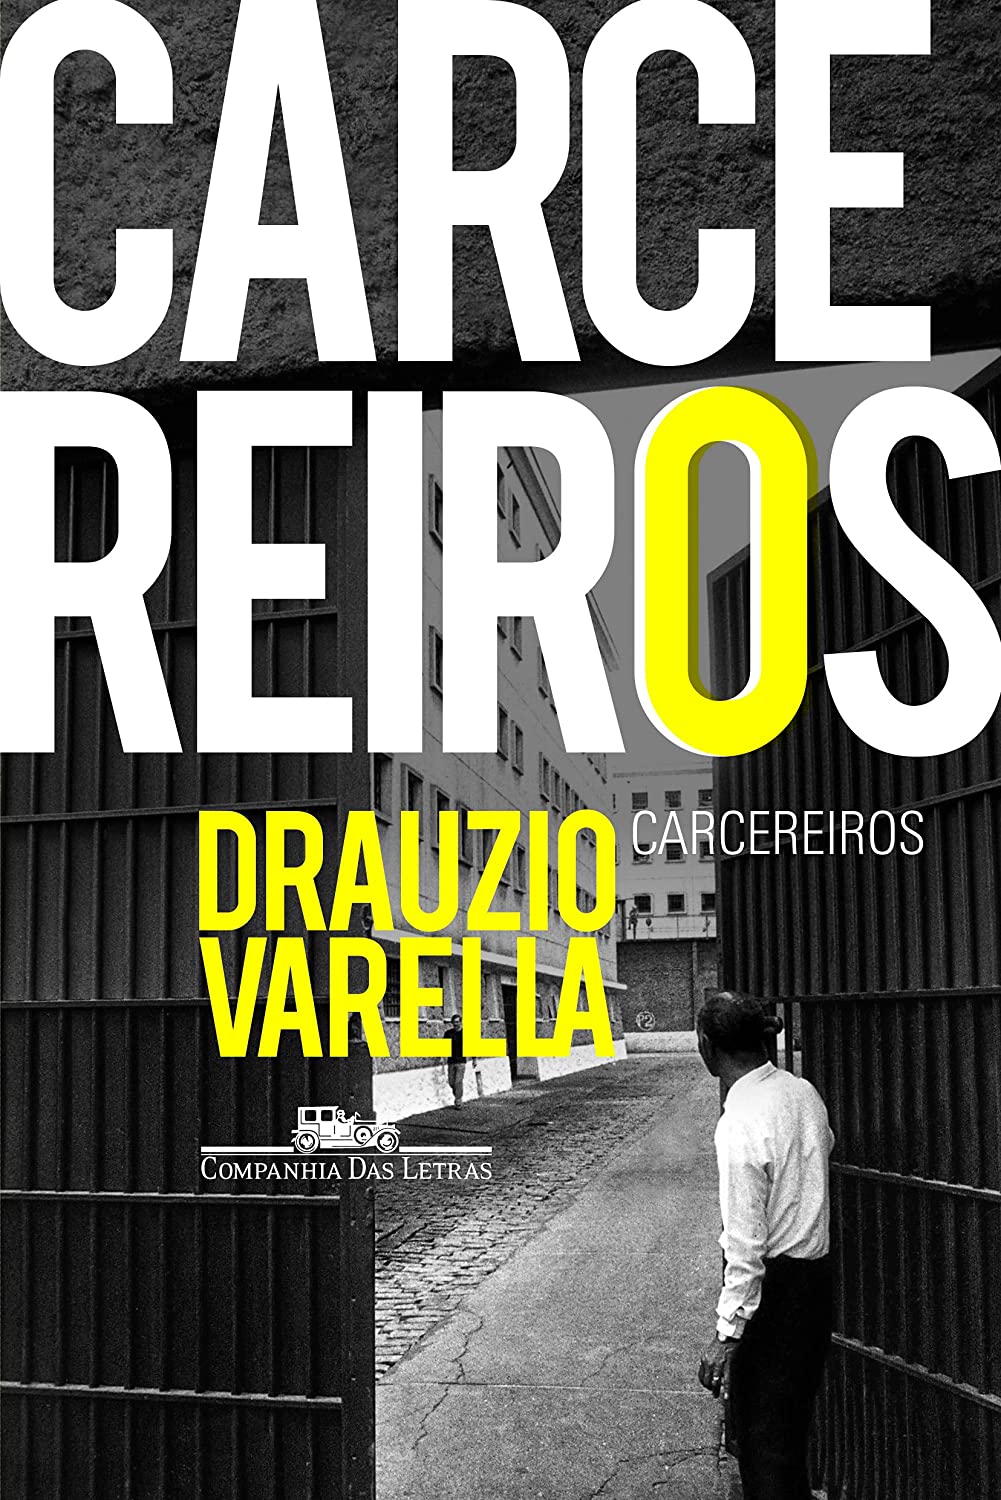 Drauzio Varella: Carcereiros (Paperback, Português language, 2012, Companhia das Letras)